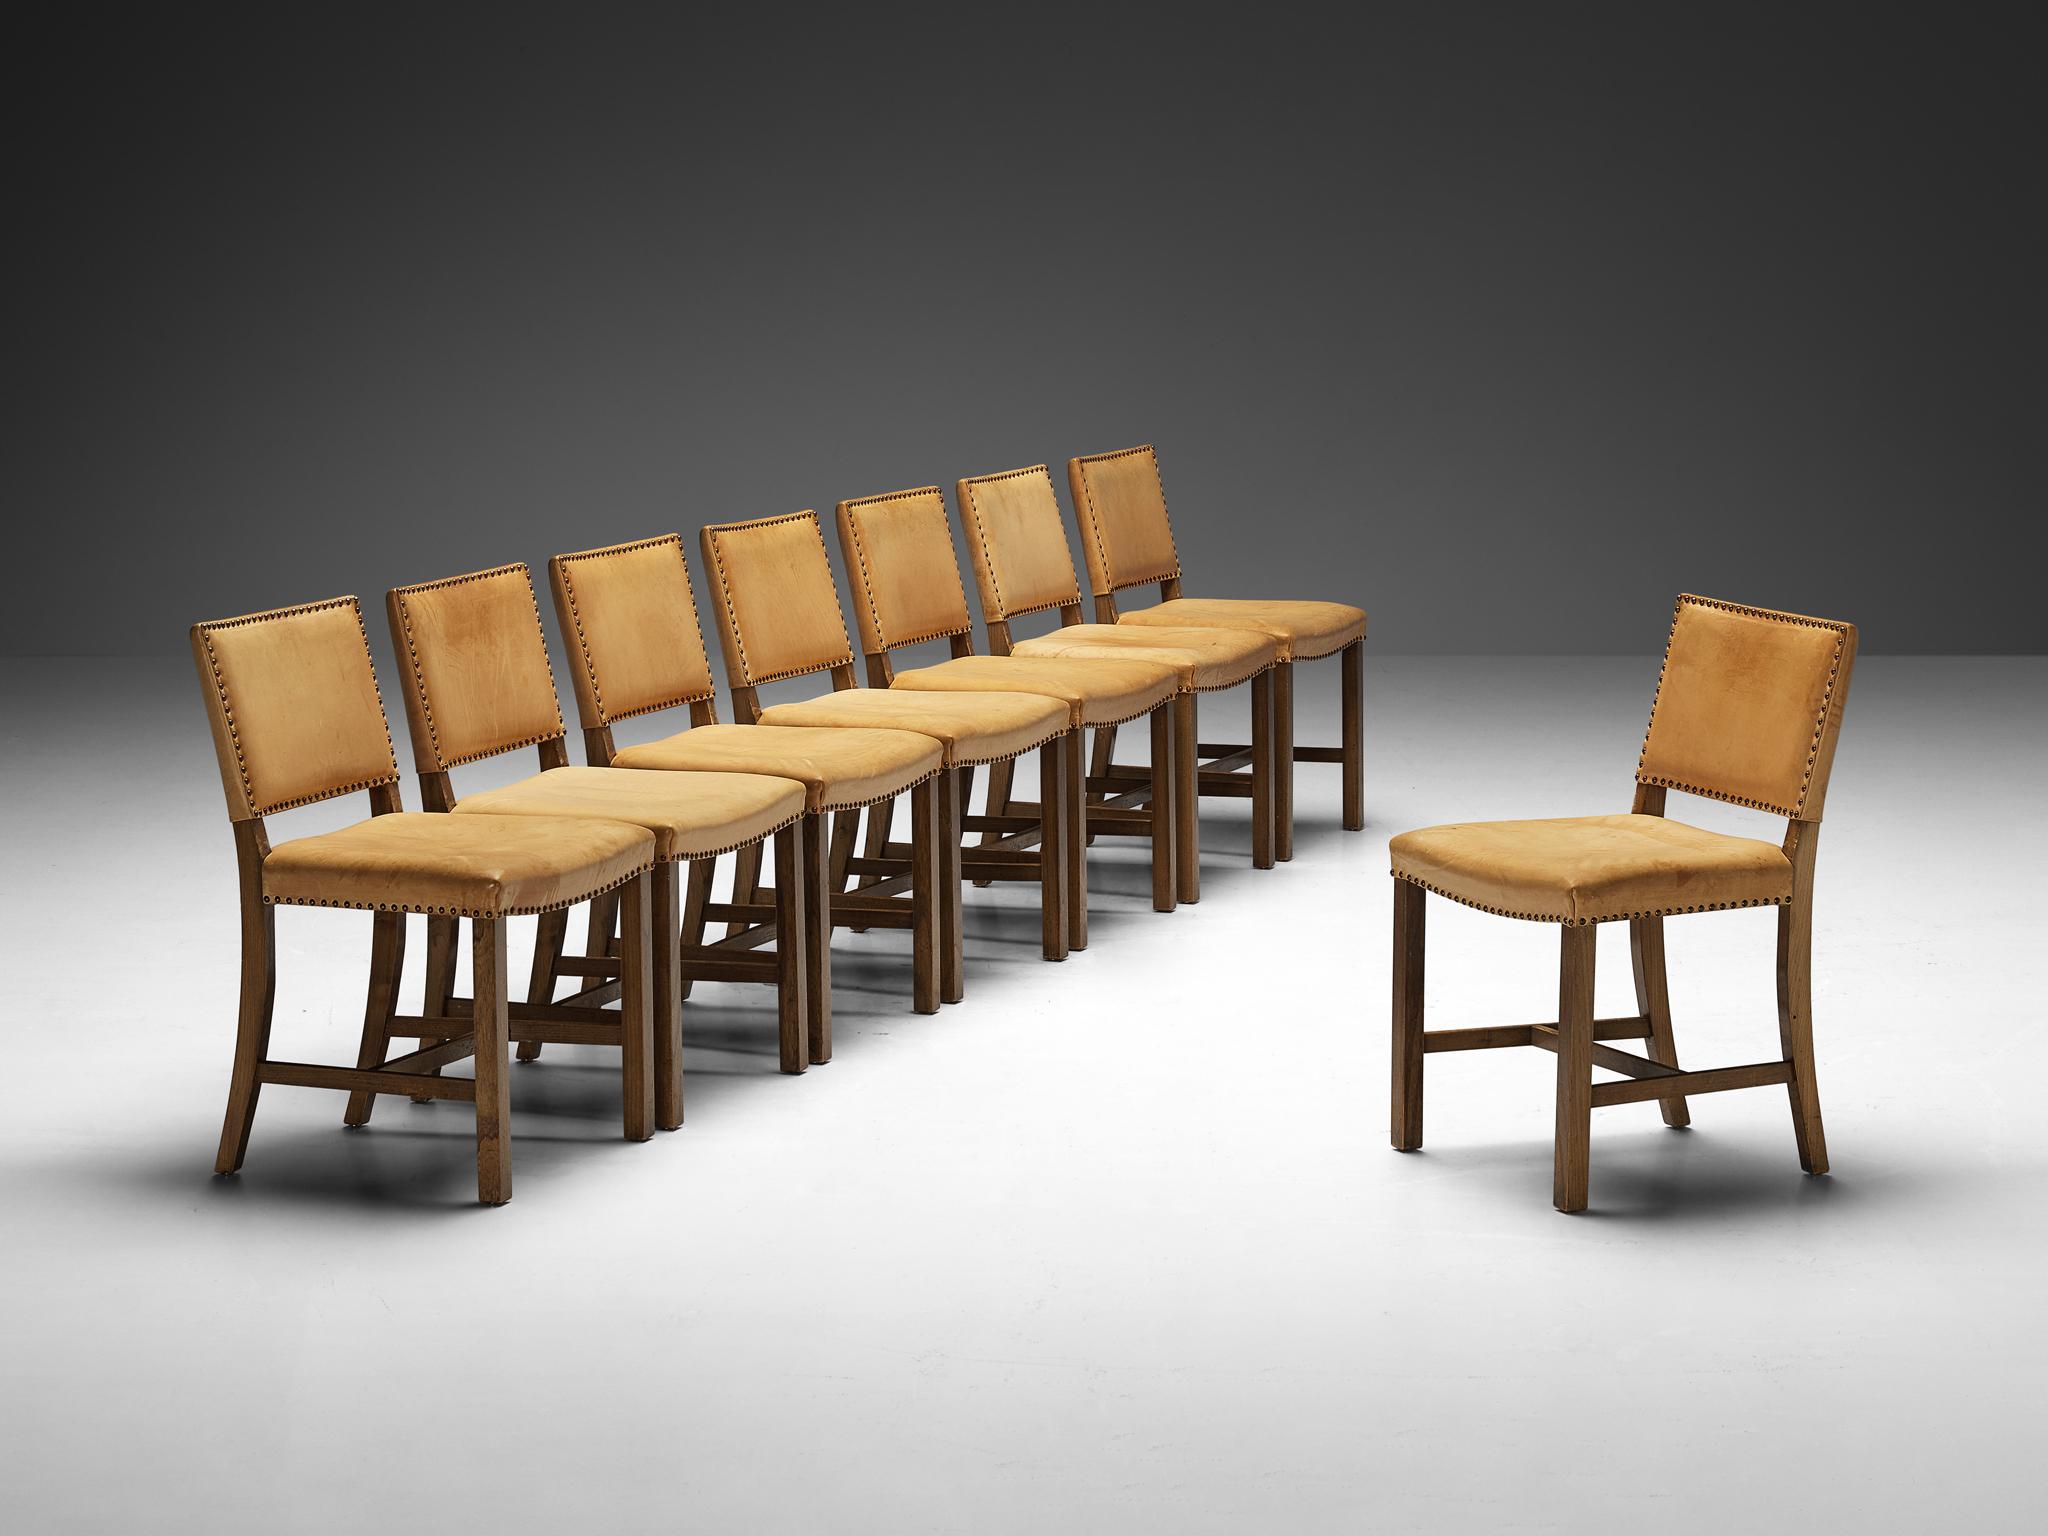 Juego de ocho sillas de comedor, olmo, cuero, metal, Dinamarca, años 50

Impregnado de elegancia y artesanía intemporales, este conjunto de sillas de comedor danesas muestra grandes similitudes con el distinguido estilo de Kaare Klint. Fabricadas